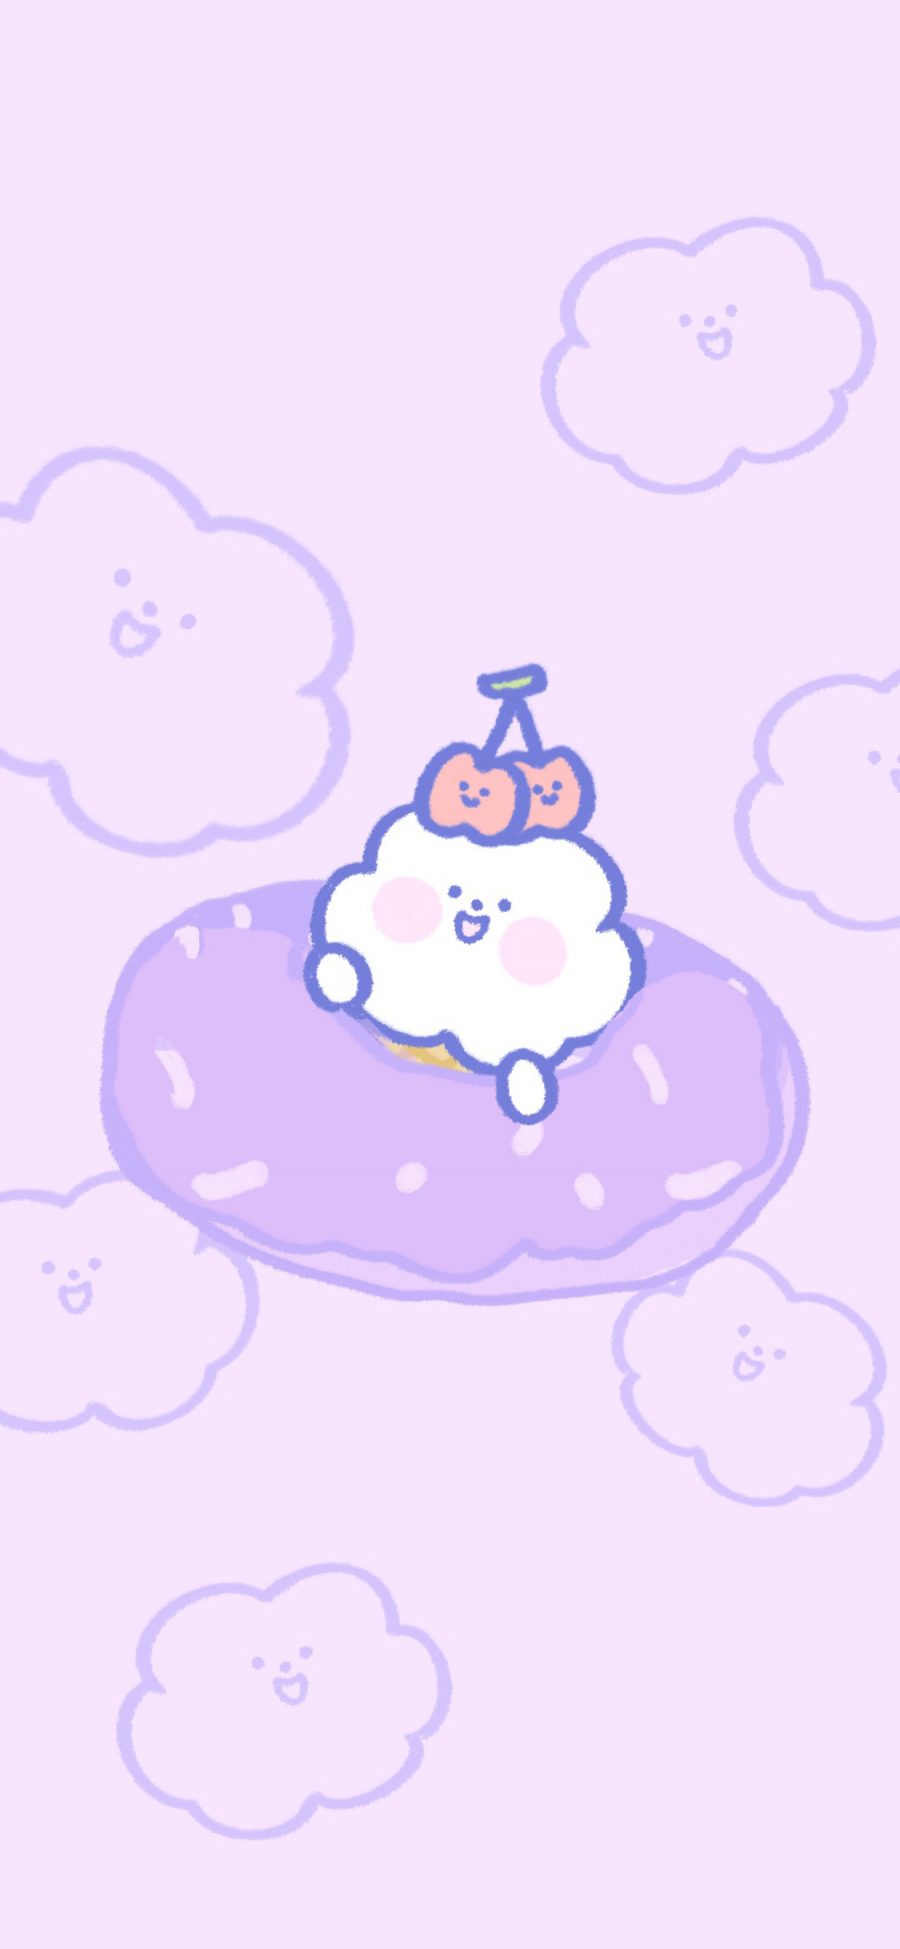 [2436×1125]云朵 樱桃 紫色 甜甜圈 苹果手机动漫壁纸图片